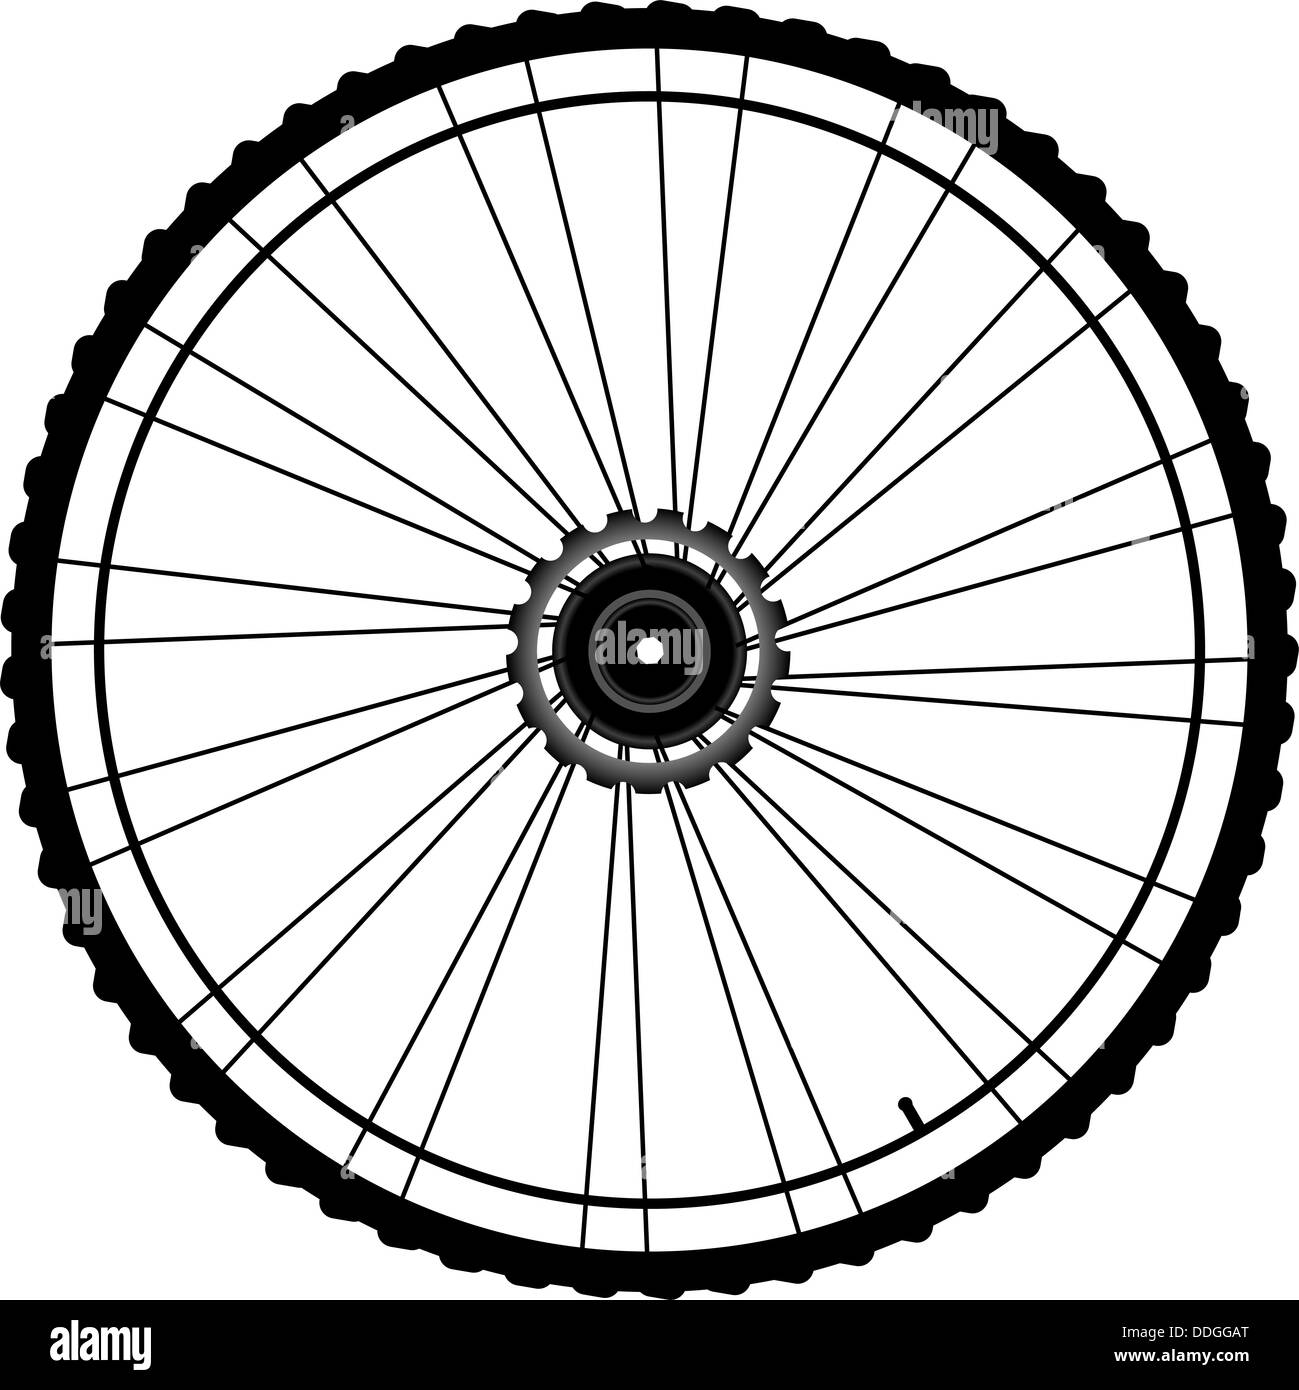 Колесо велосипед рисунок. Велосипедное колесо. Стилизованное колесо велосипеда. Колесо велосипеда на прозрачном фоне. Колесо велосипеда контур.